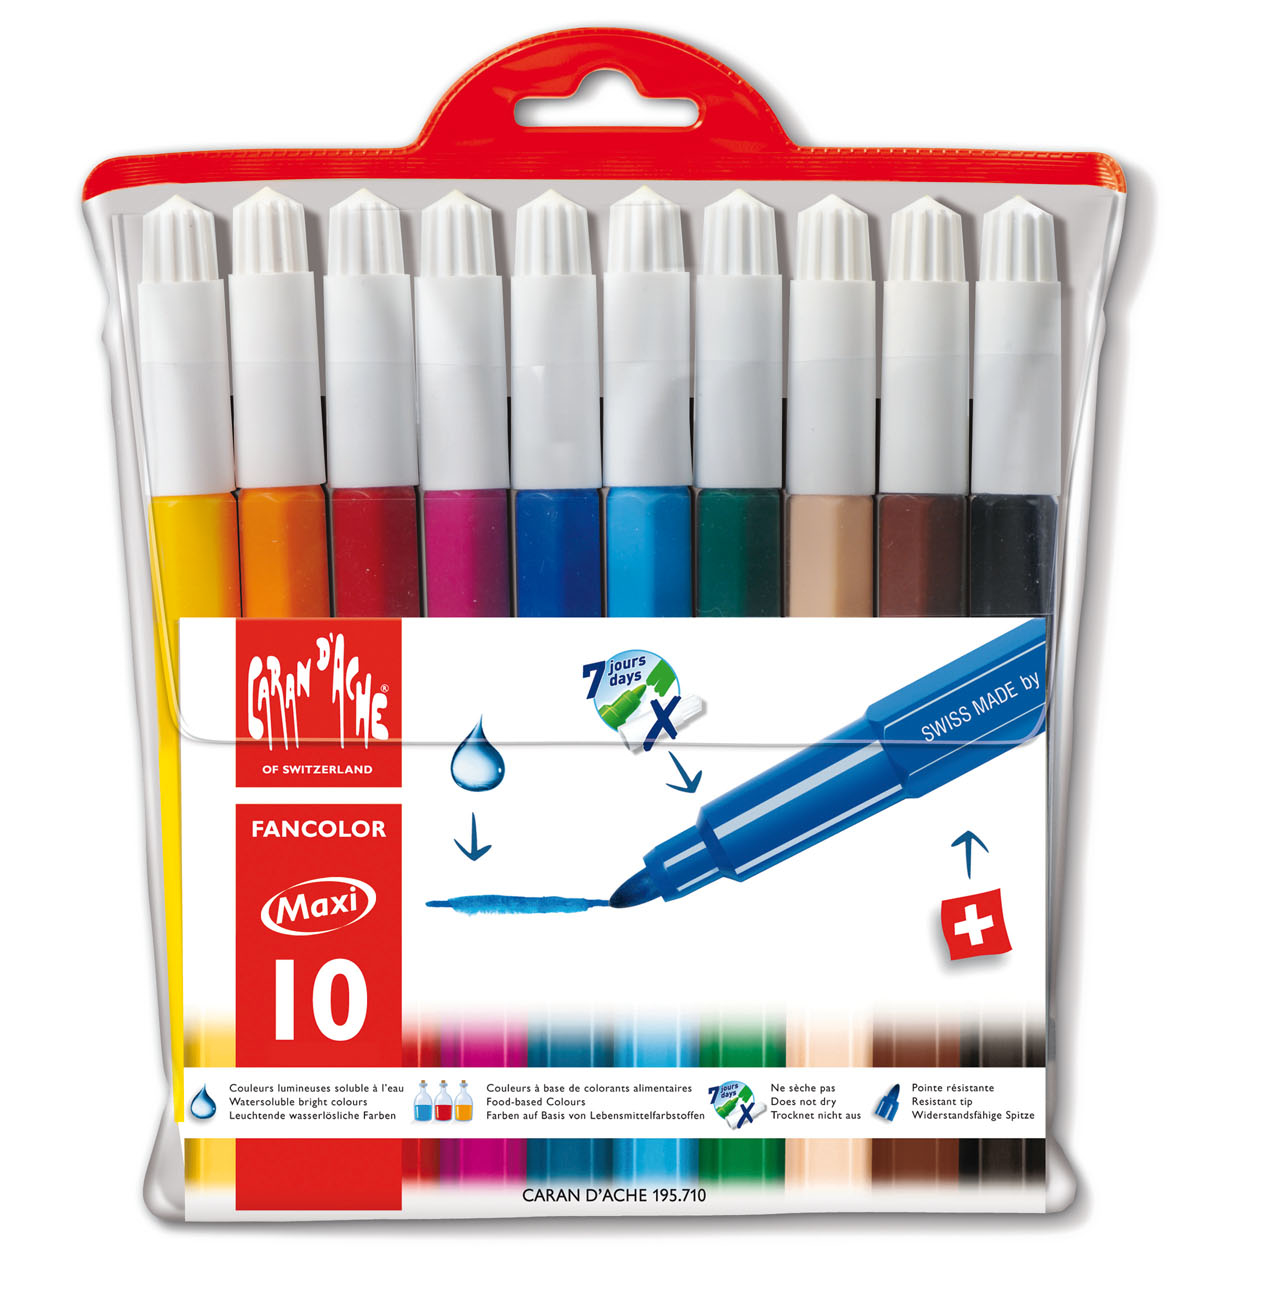 CARAN D'ACHE Fancolor Maxi XB 195.710 10 couleurs, étui